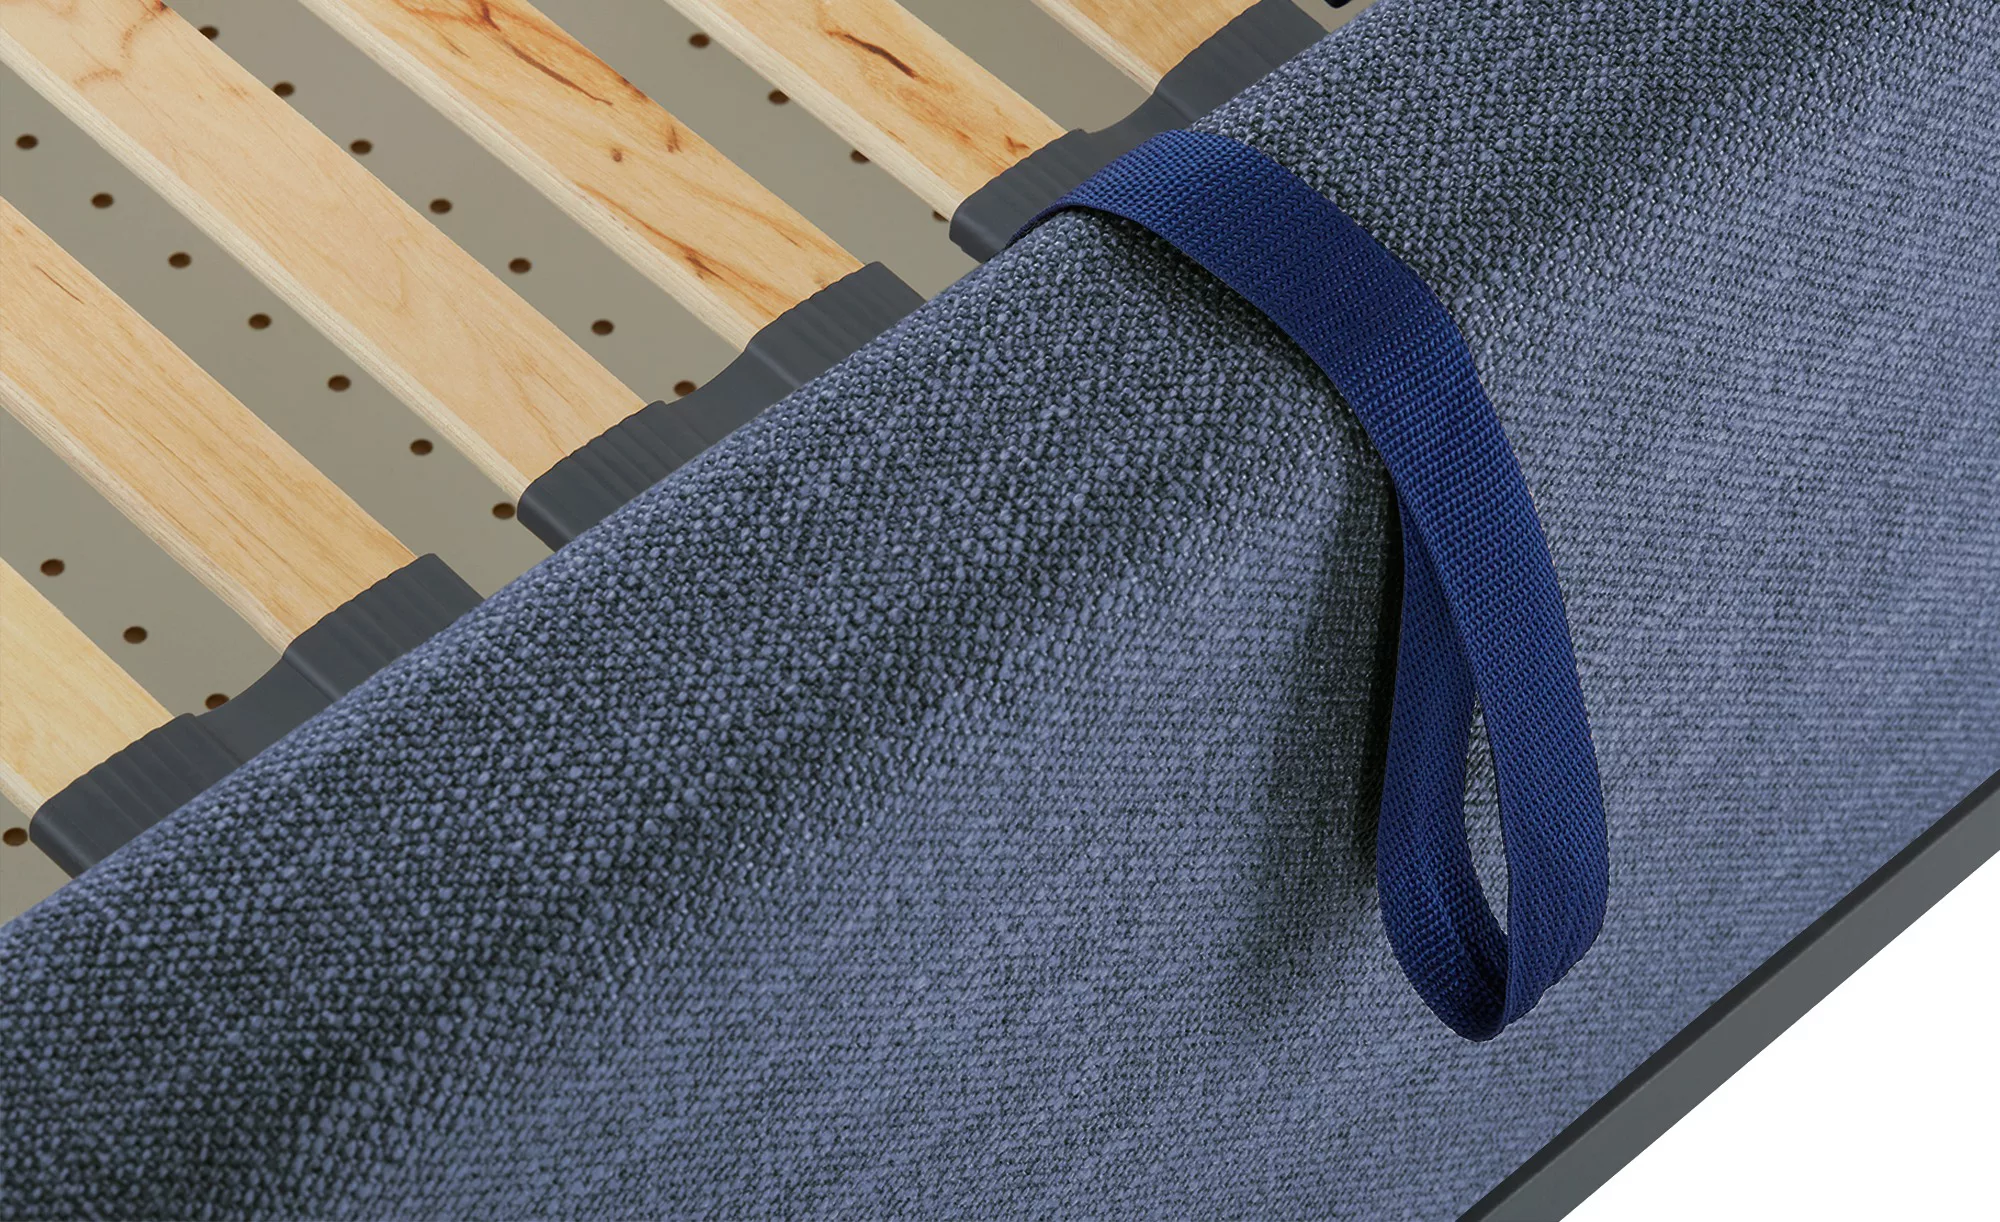 Musterring Polsterbett mit Bettkasten Delphi Variante D ¦ blau ¦ Maße (cm): günstig online kaufen